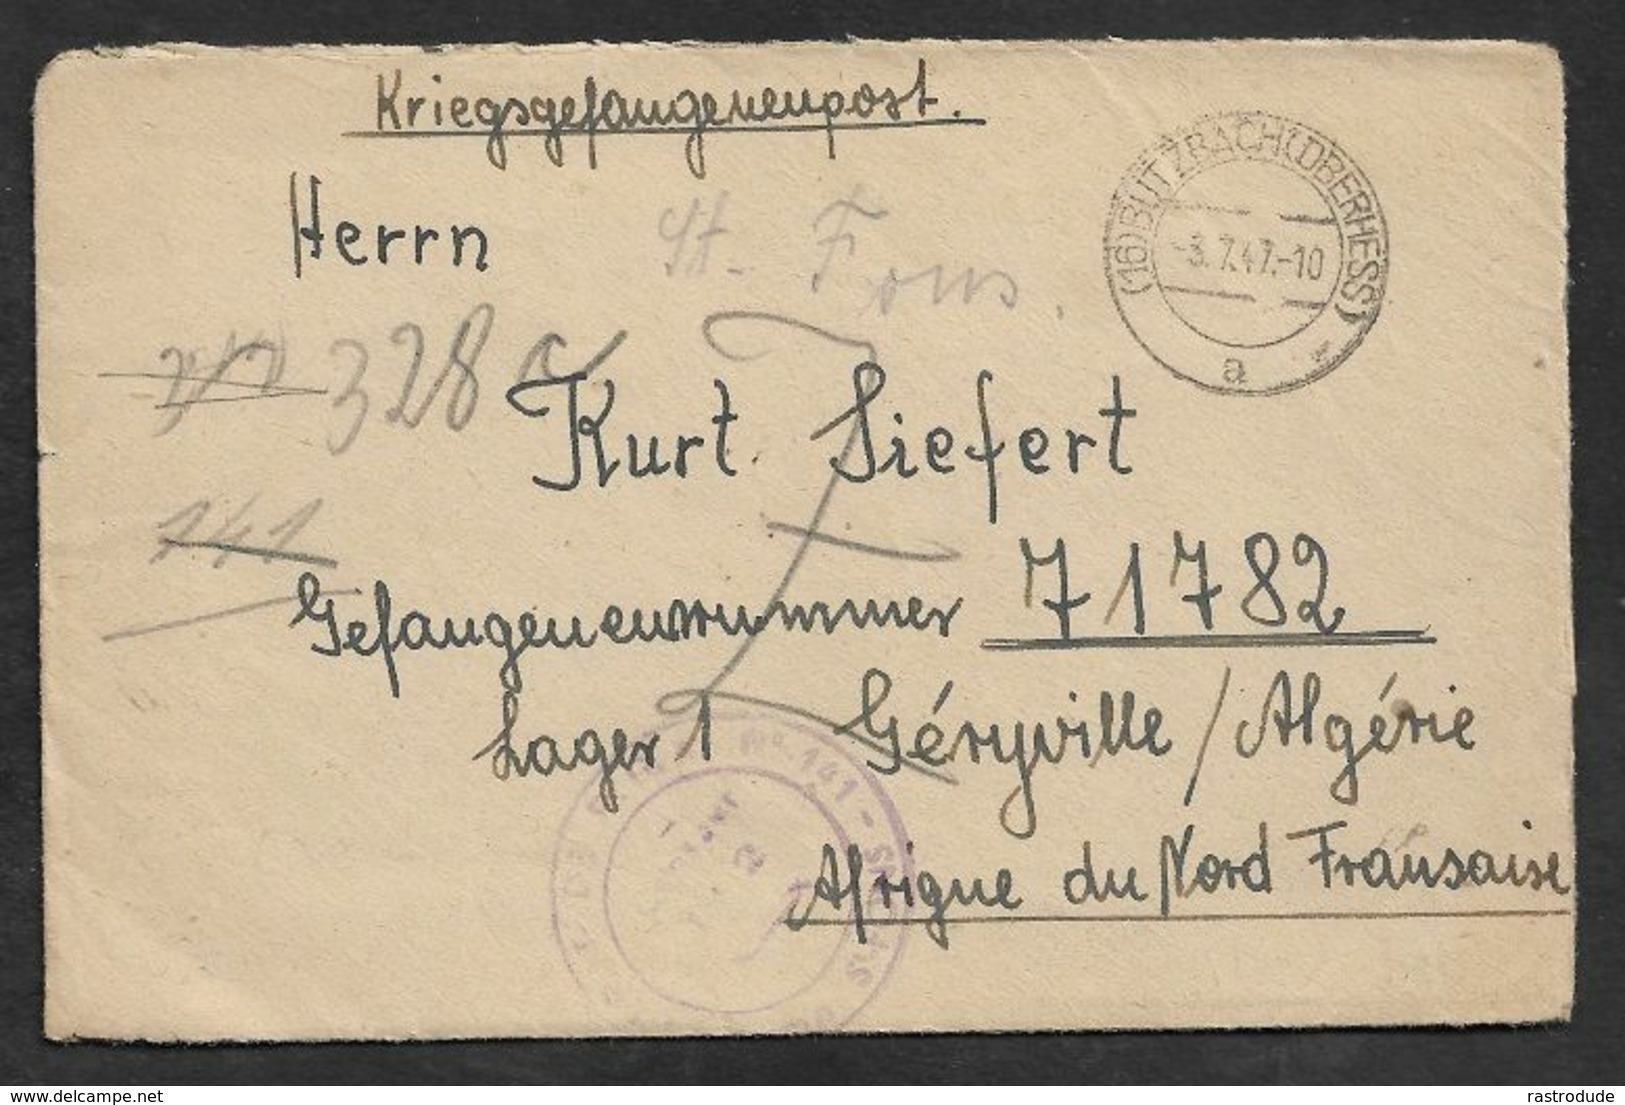 1947 KGF - PRISONNIERS DE GUERRE - KRIEGSGEFANGENE POST A. BUTZBACH N. GÉRYVILLE LAGER 1. INHALT ! FLÜCHTLING - Covers & Documents